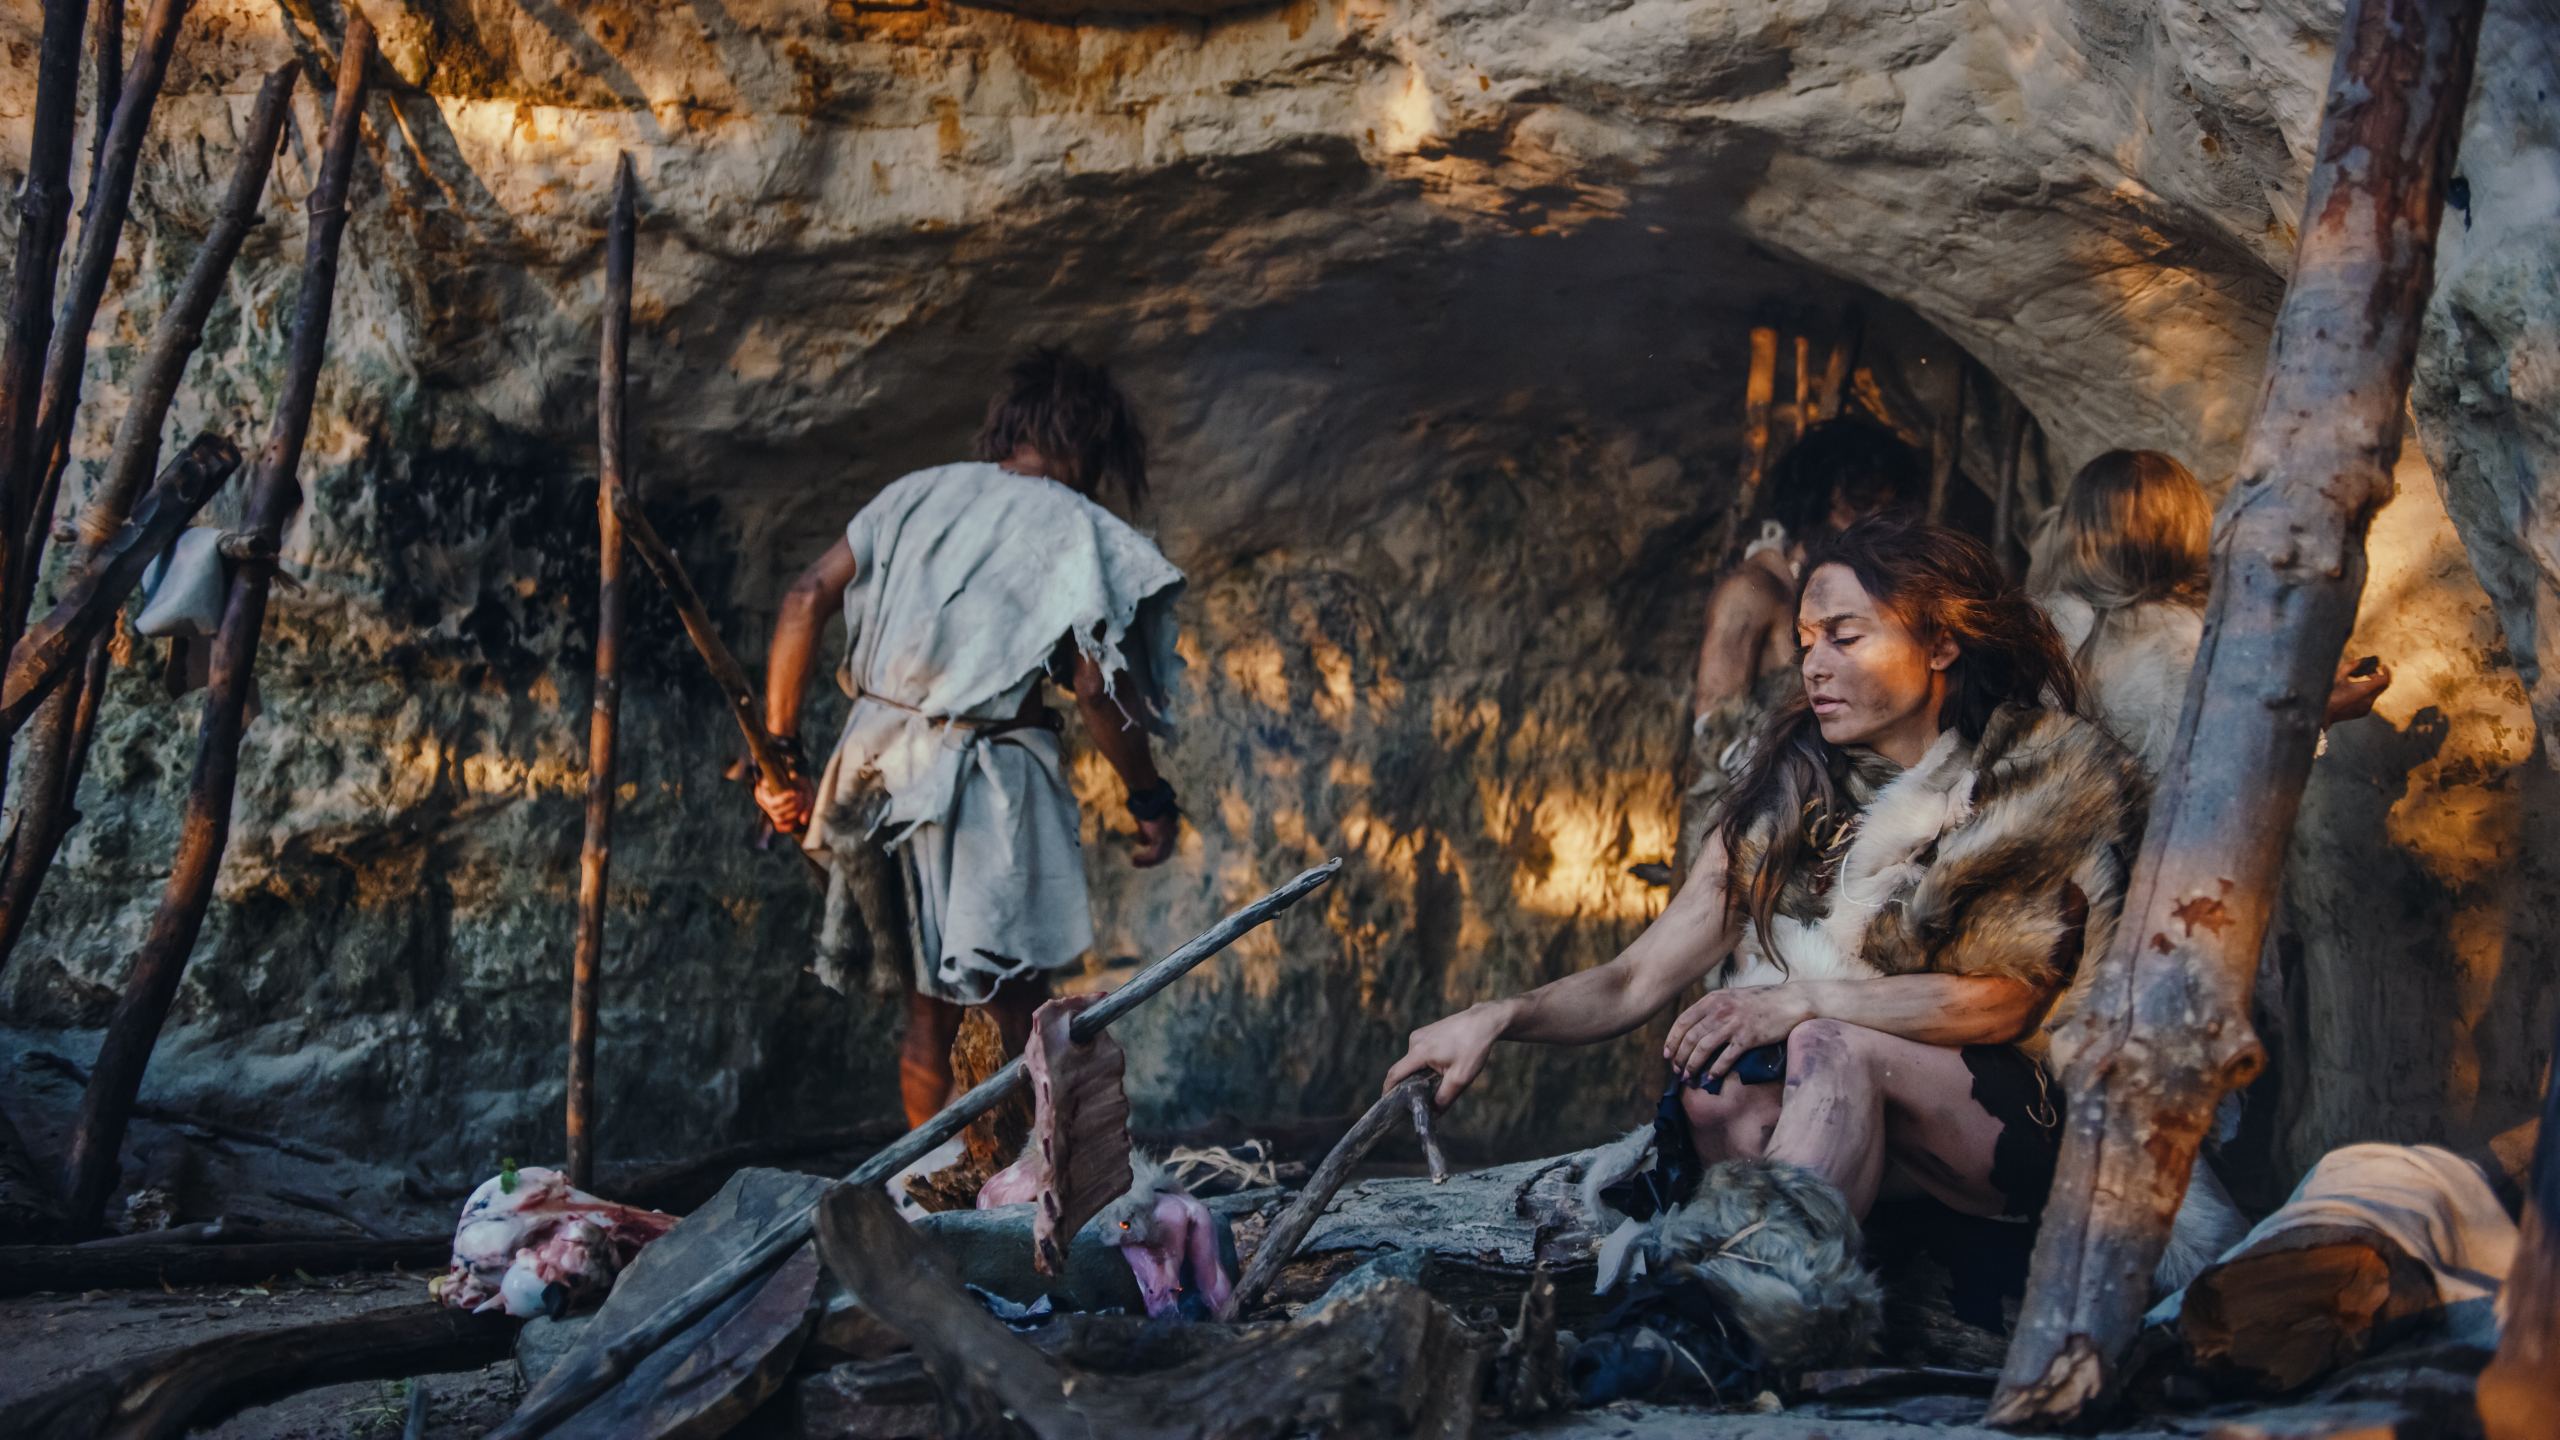 Uma imagem recreativa da família Neandertal Homo Sapiens. Tribo de caçadores-coletores vestindo pele de animal vive em uma caverna. Líder traz presas animais da caça, mulher cozinha comida na fogueira, garota desenhando em Wals criando arte.